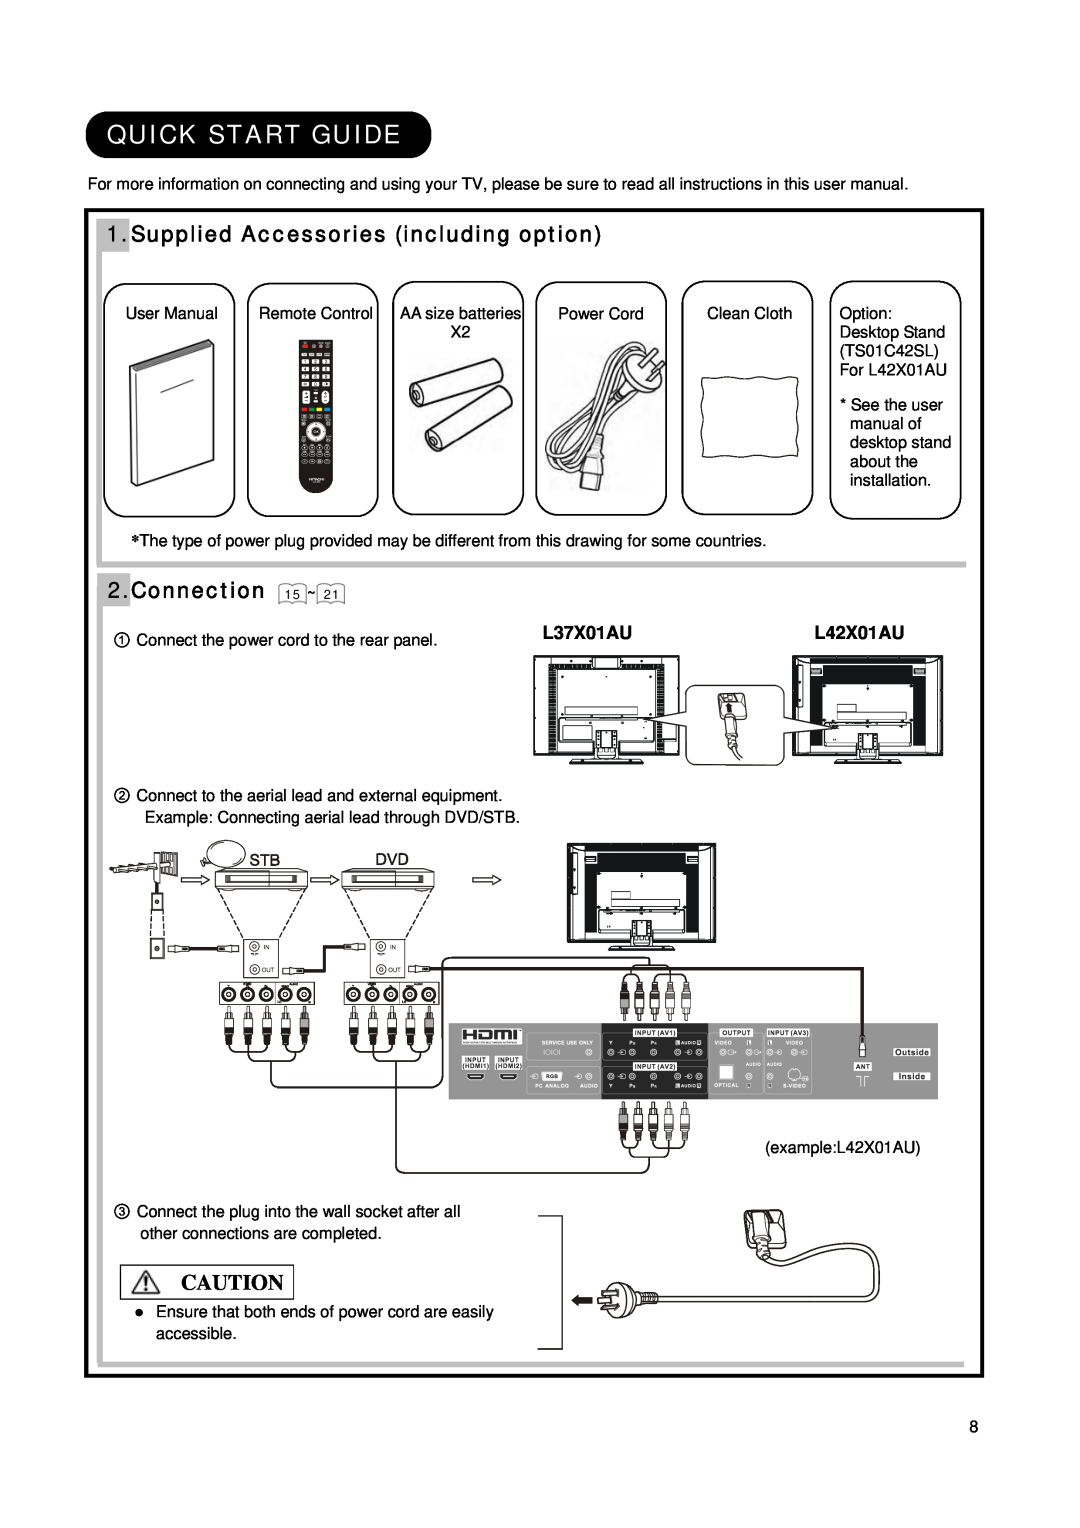 Hitachi L42X01AU manual Quick Start Guide, Supplied Accessories including option, Connection 15 ~, L37X01AU 